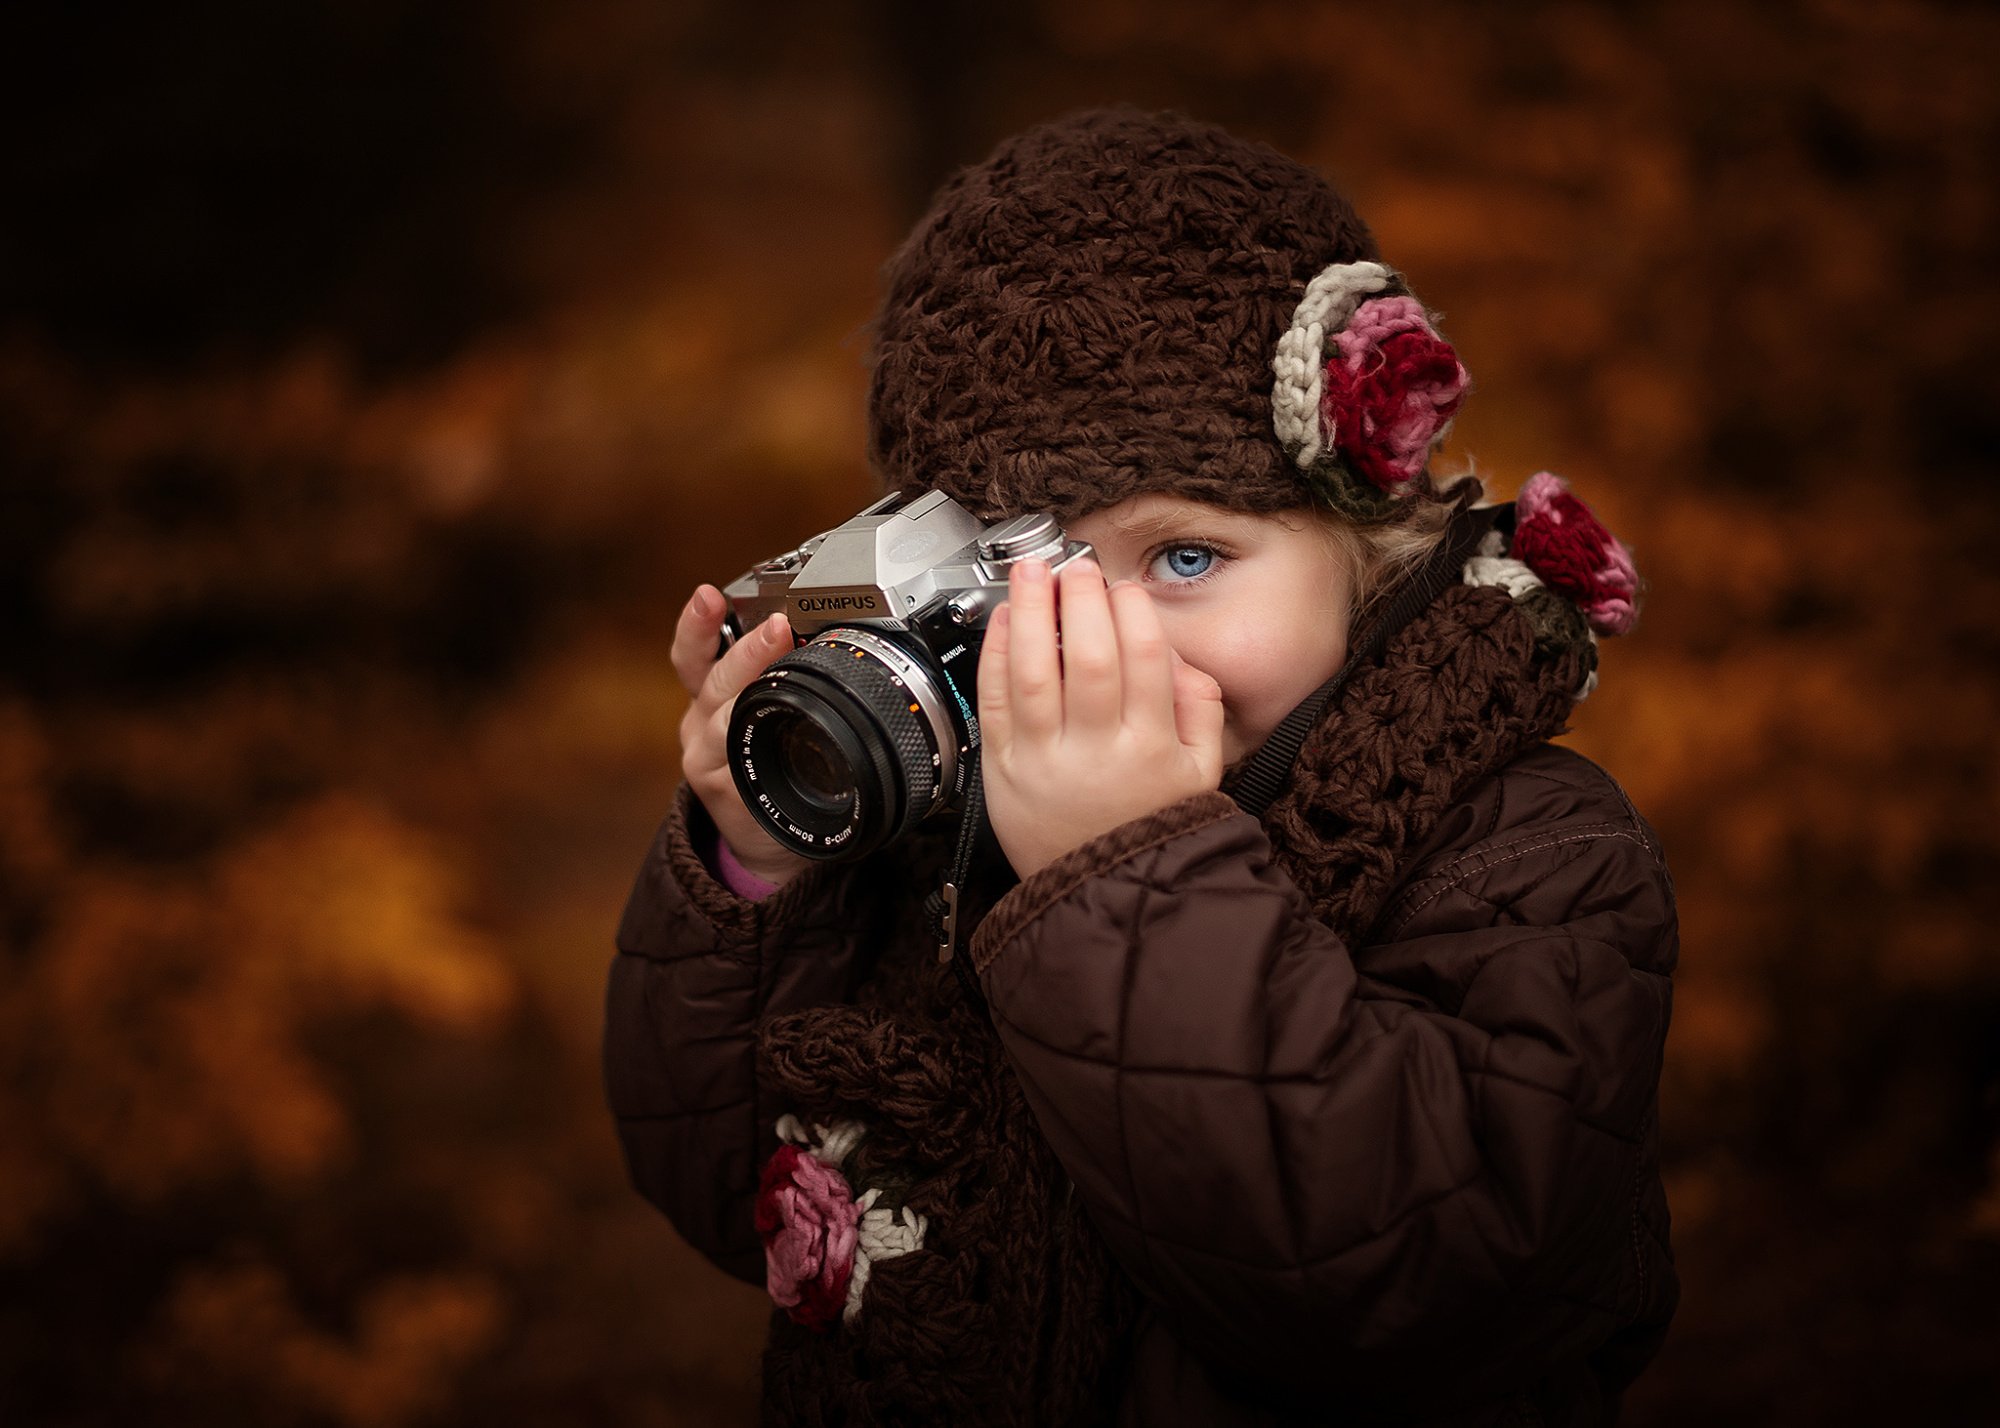 Ждана фотограф. Девушка фотограф. Фотоаппарат для детей. Фотосессия для фотографа. Фотограф фотографирует девушку.